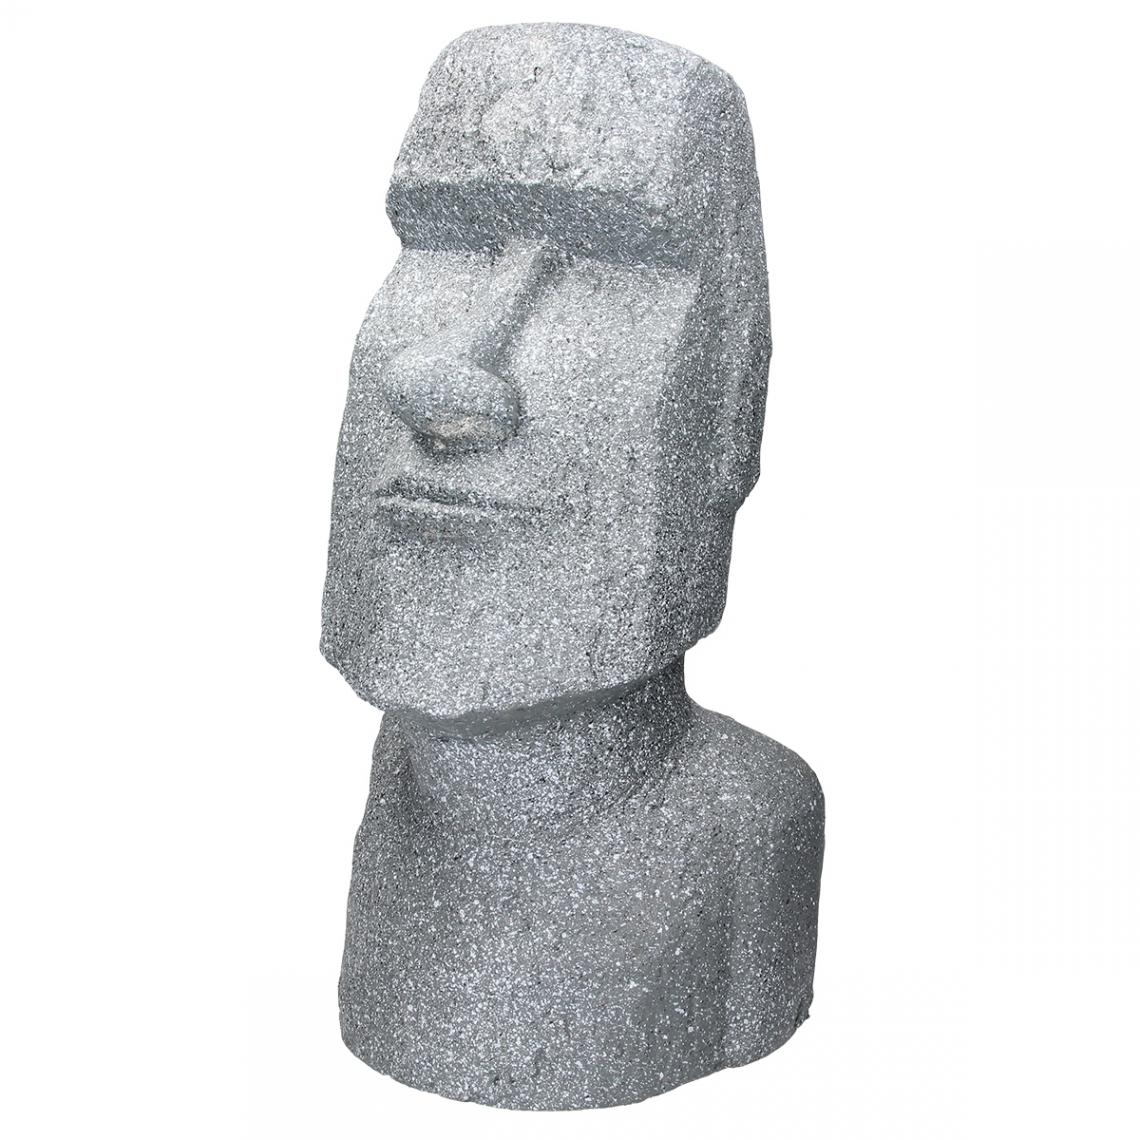 Ecd Germany - Statue Île de Pâques Moai Rapa Nui figure déco sculpture jardin tête 56 cm gris - Petite déco d'exterieur